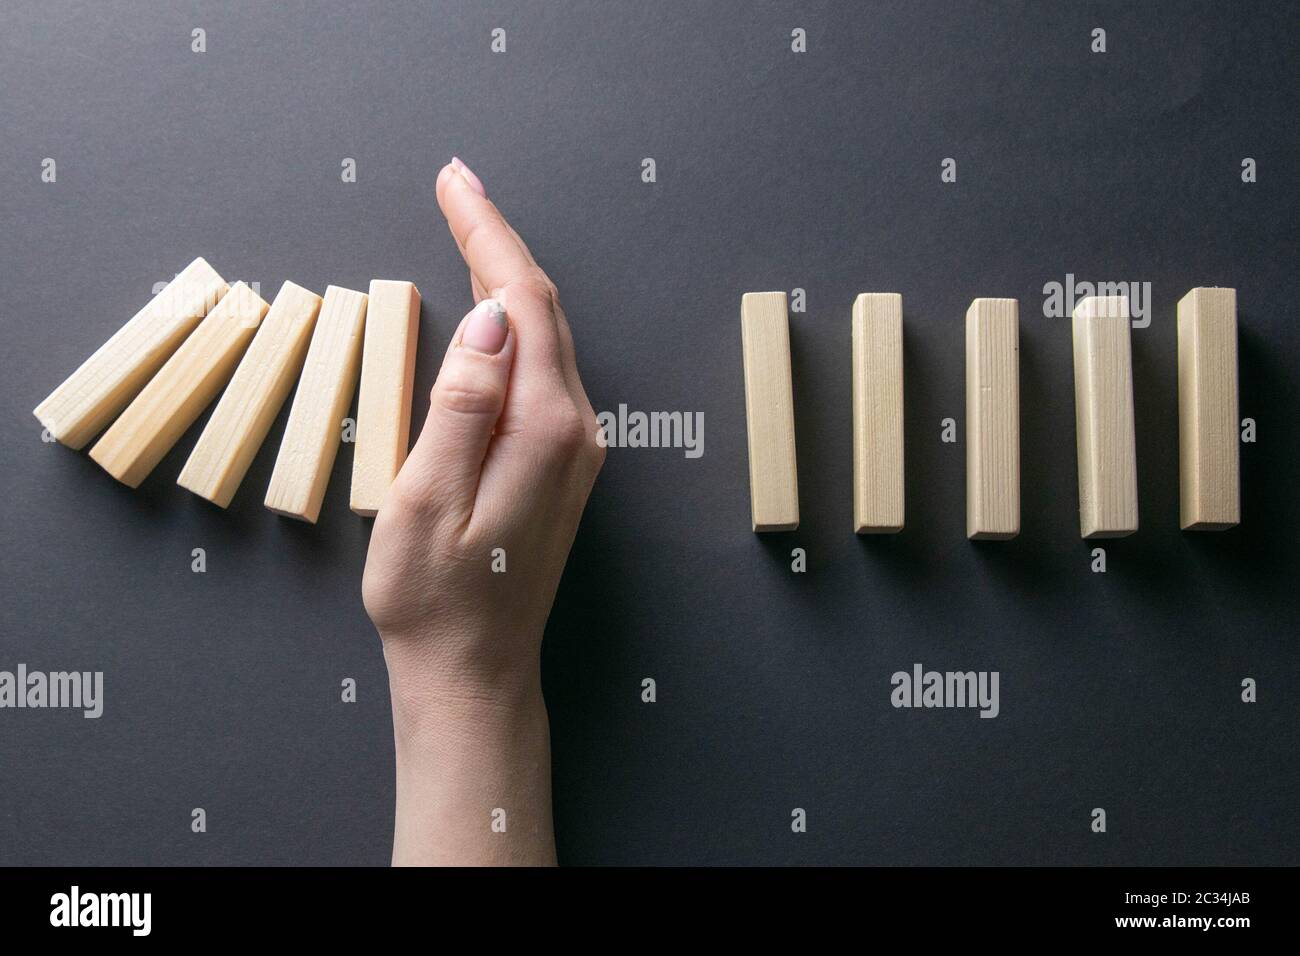 Vue de dessus de la main de l'arrêt de la chute des dominos dans une image conceptuelle de gestion de crise d'entreprise. Banque D'Images